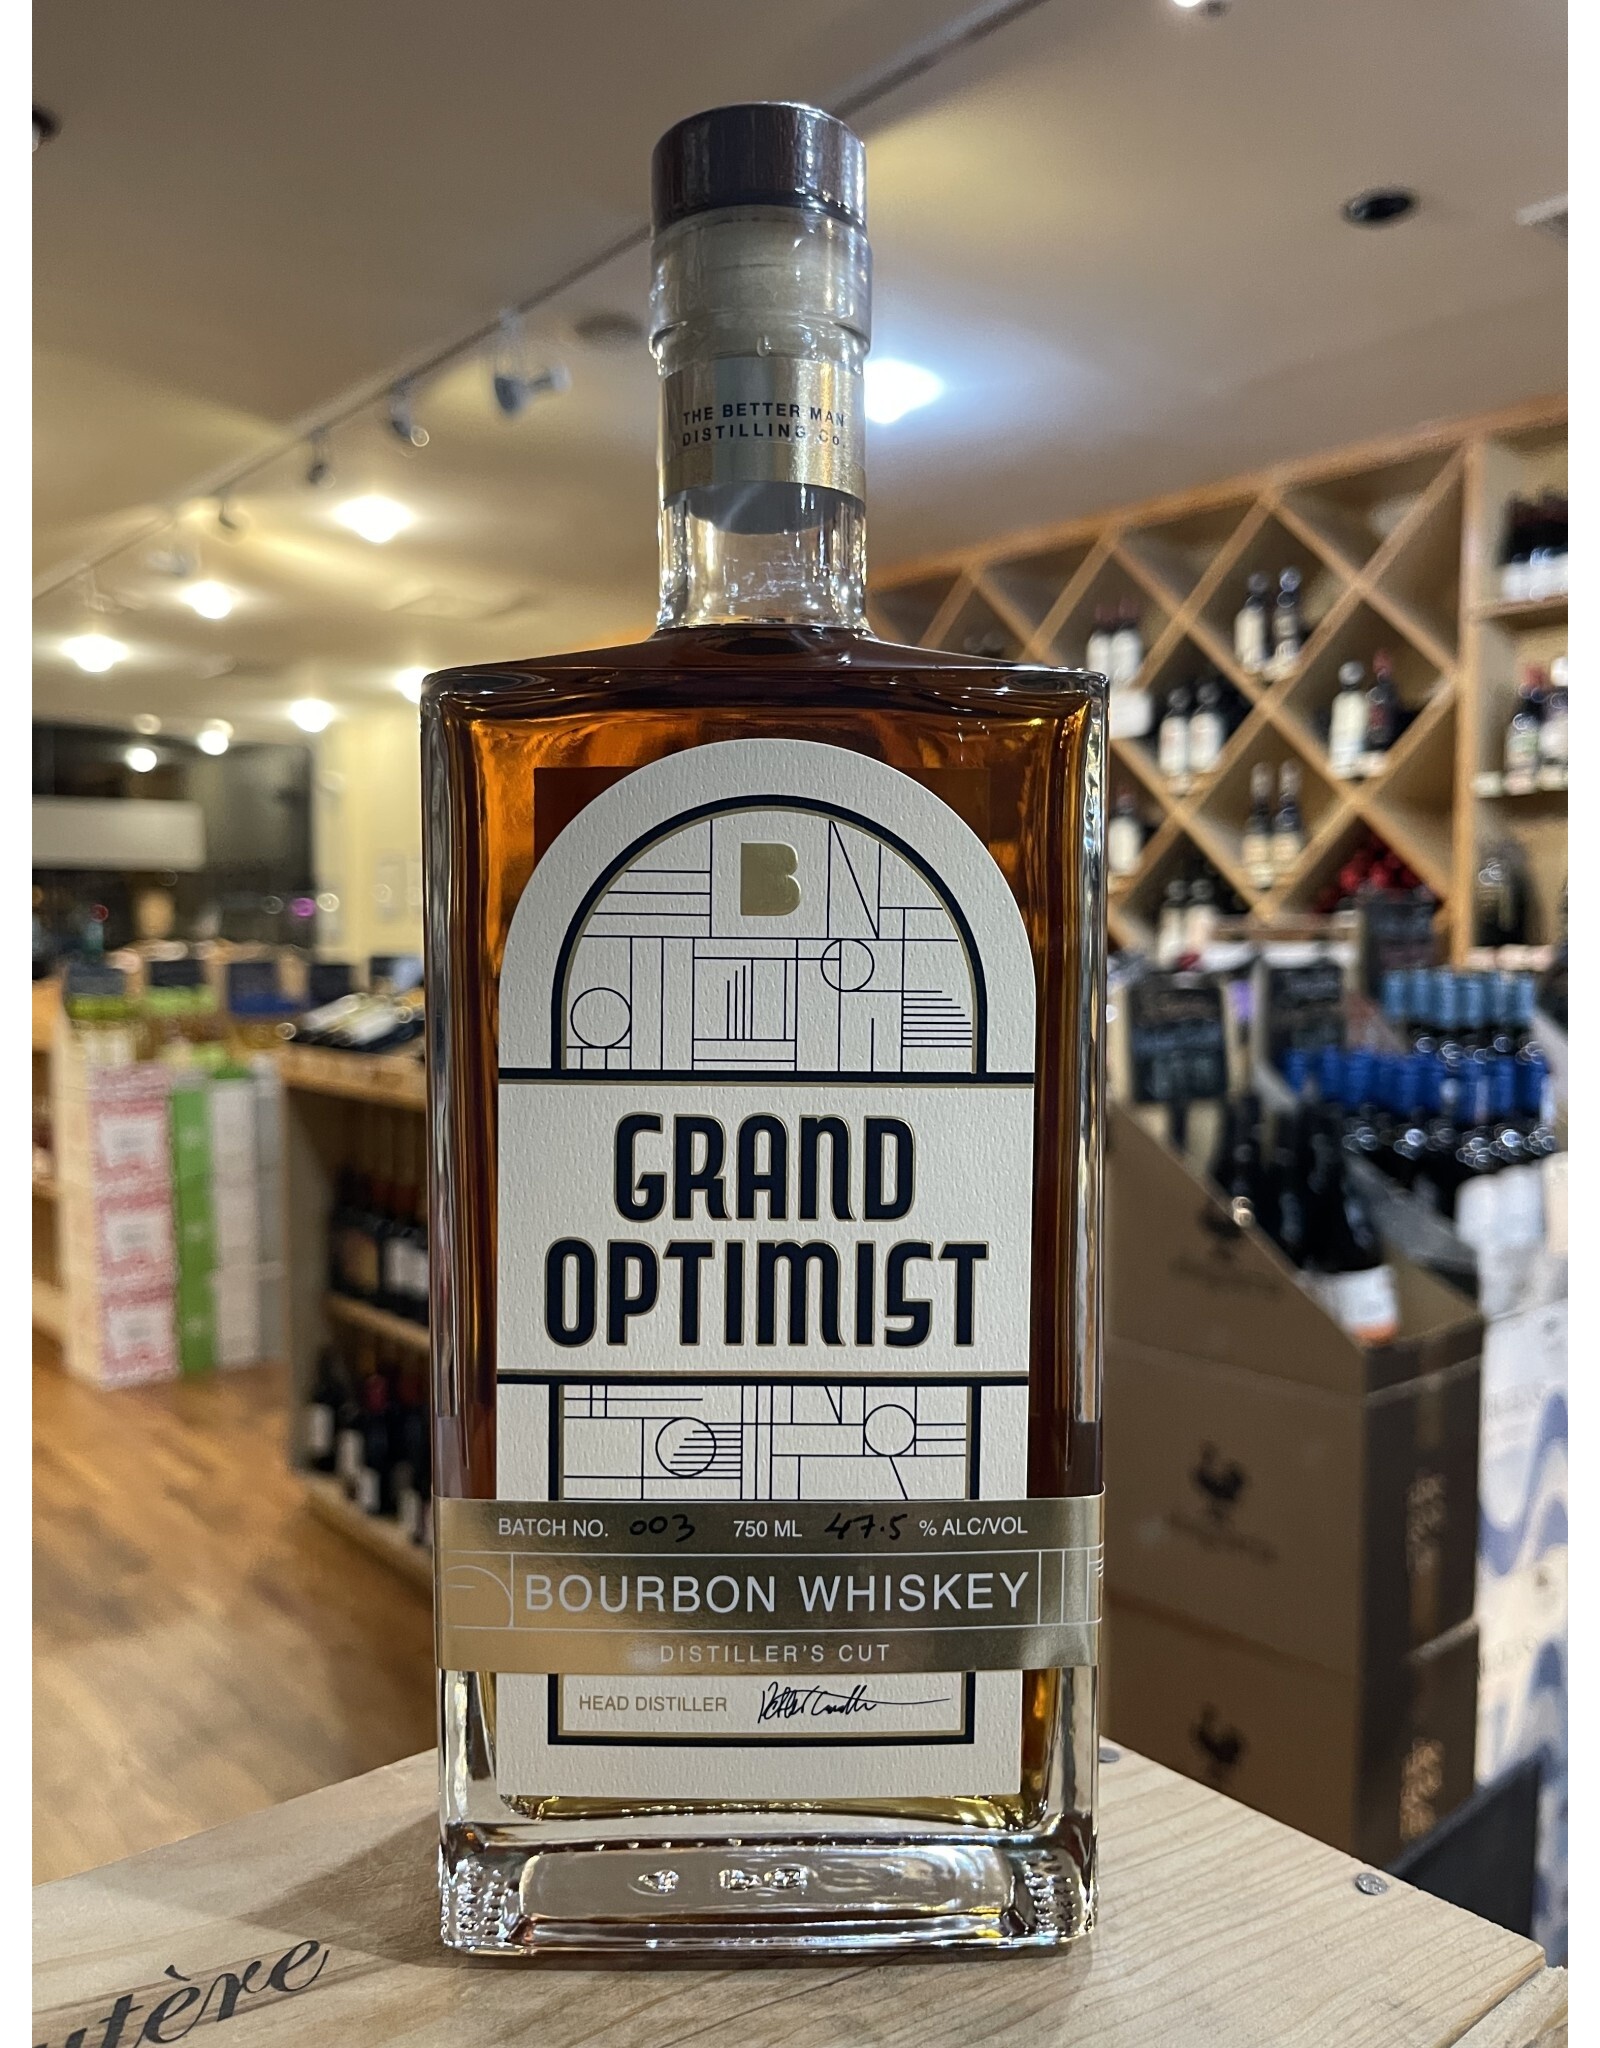 USA The Better Man Distilling Co. Grand Optimist Bourbon Whiskey